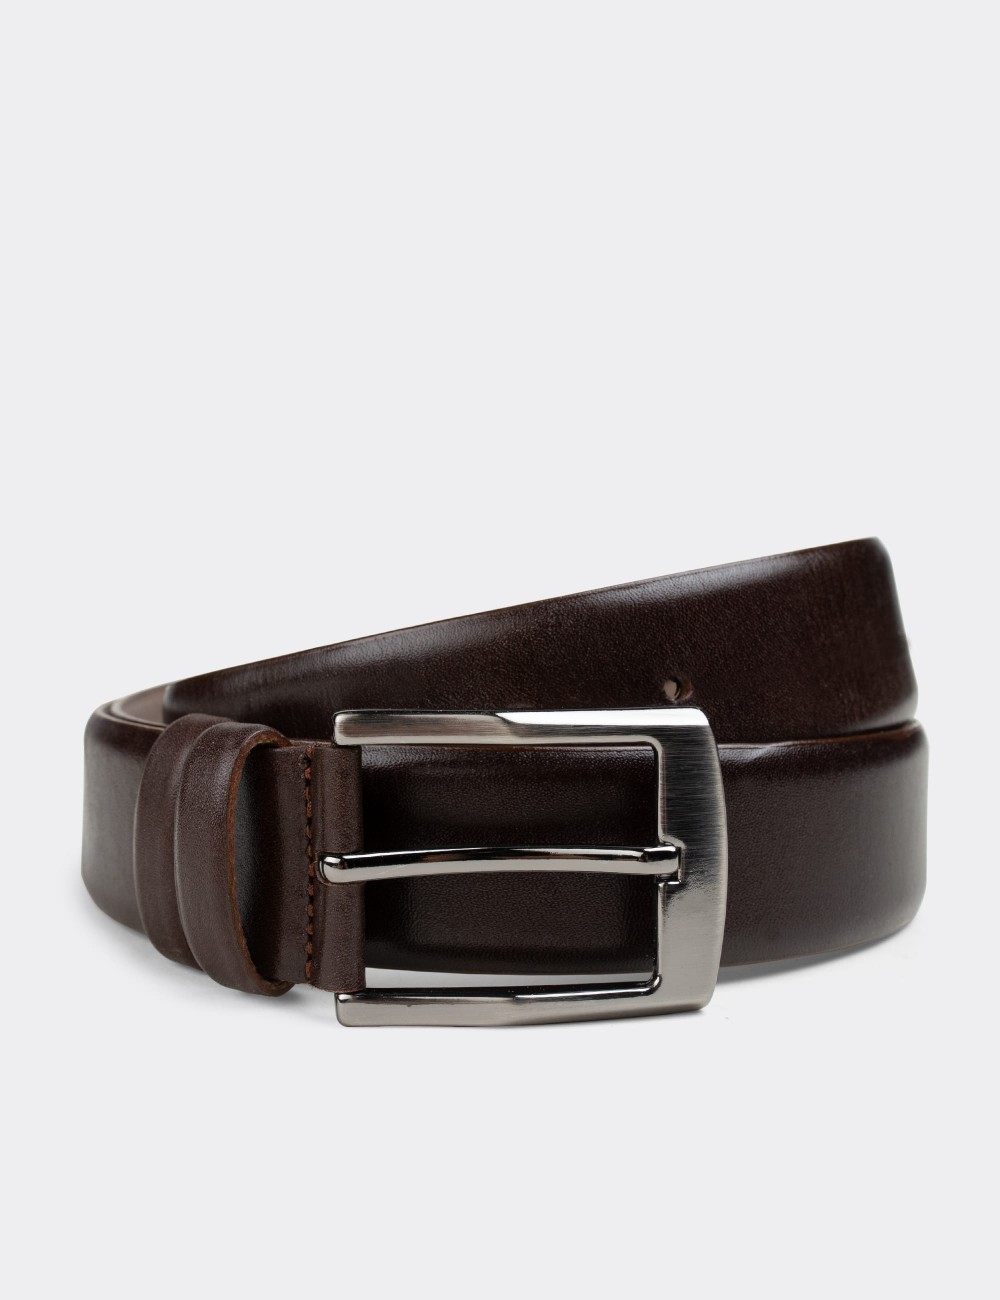  Leather Brown Men's Belt - K0403MKHVW01